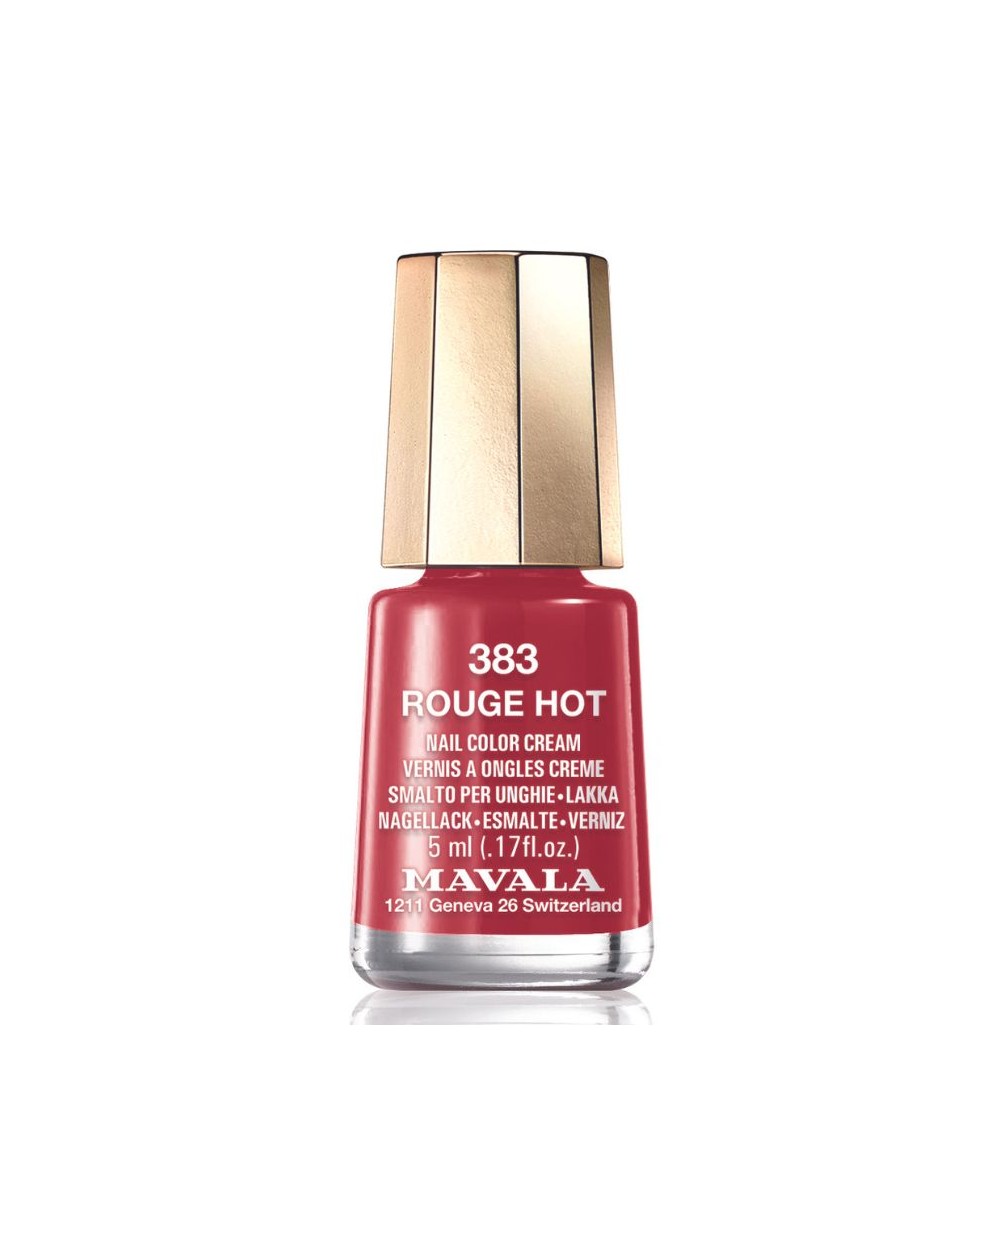 MAVALA Mini Color Rouge Hot 383